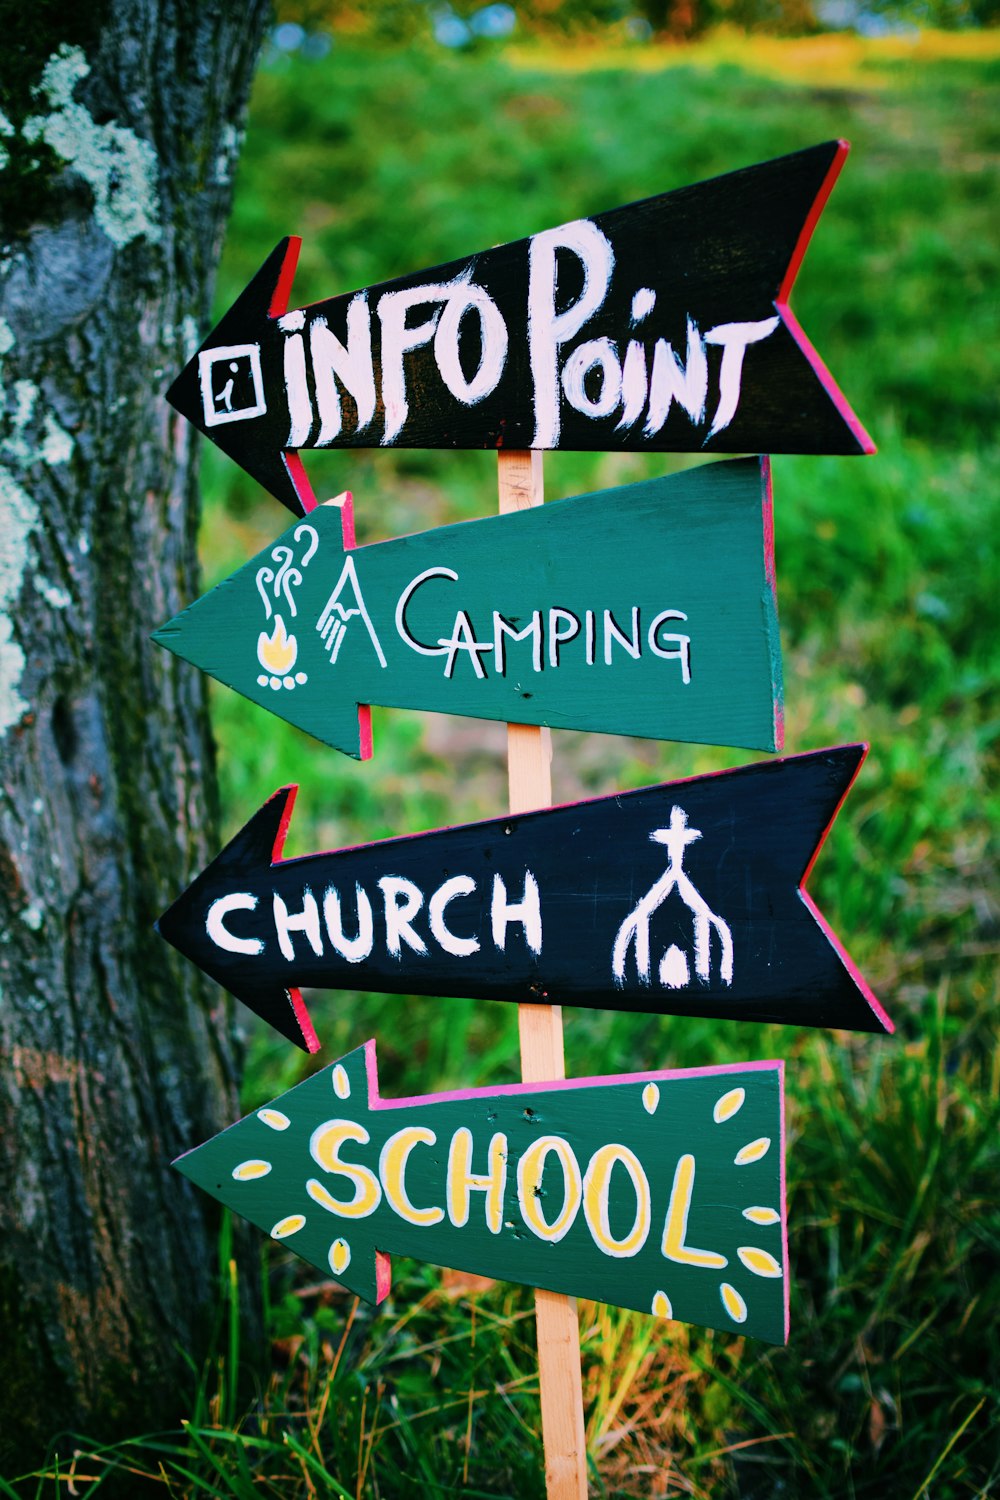 fotografia a fuoco selettivo della segnaletica di Info point, campeggio, chiesa e scuola a sinistra